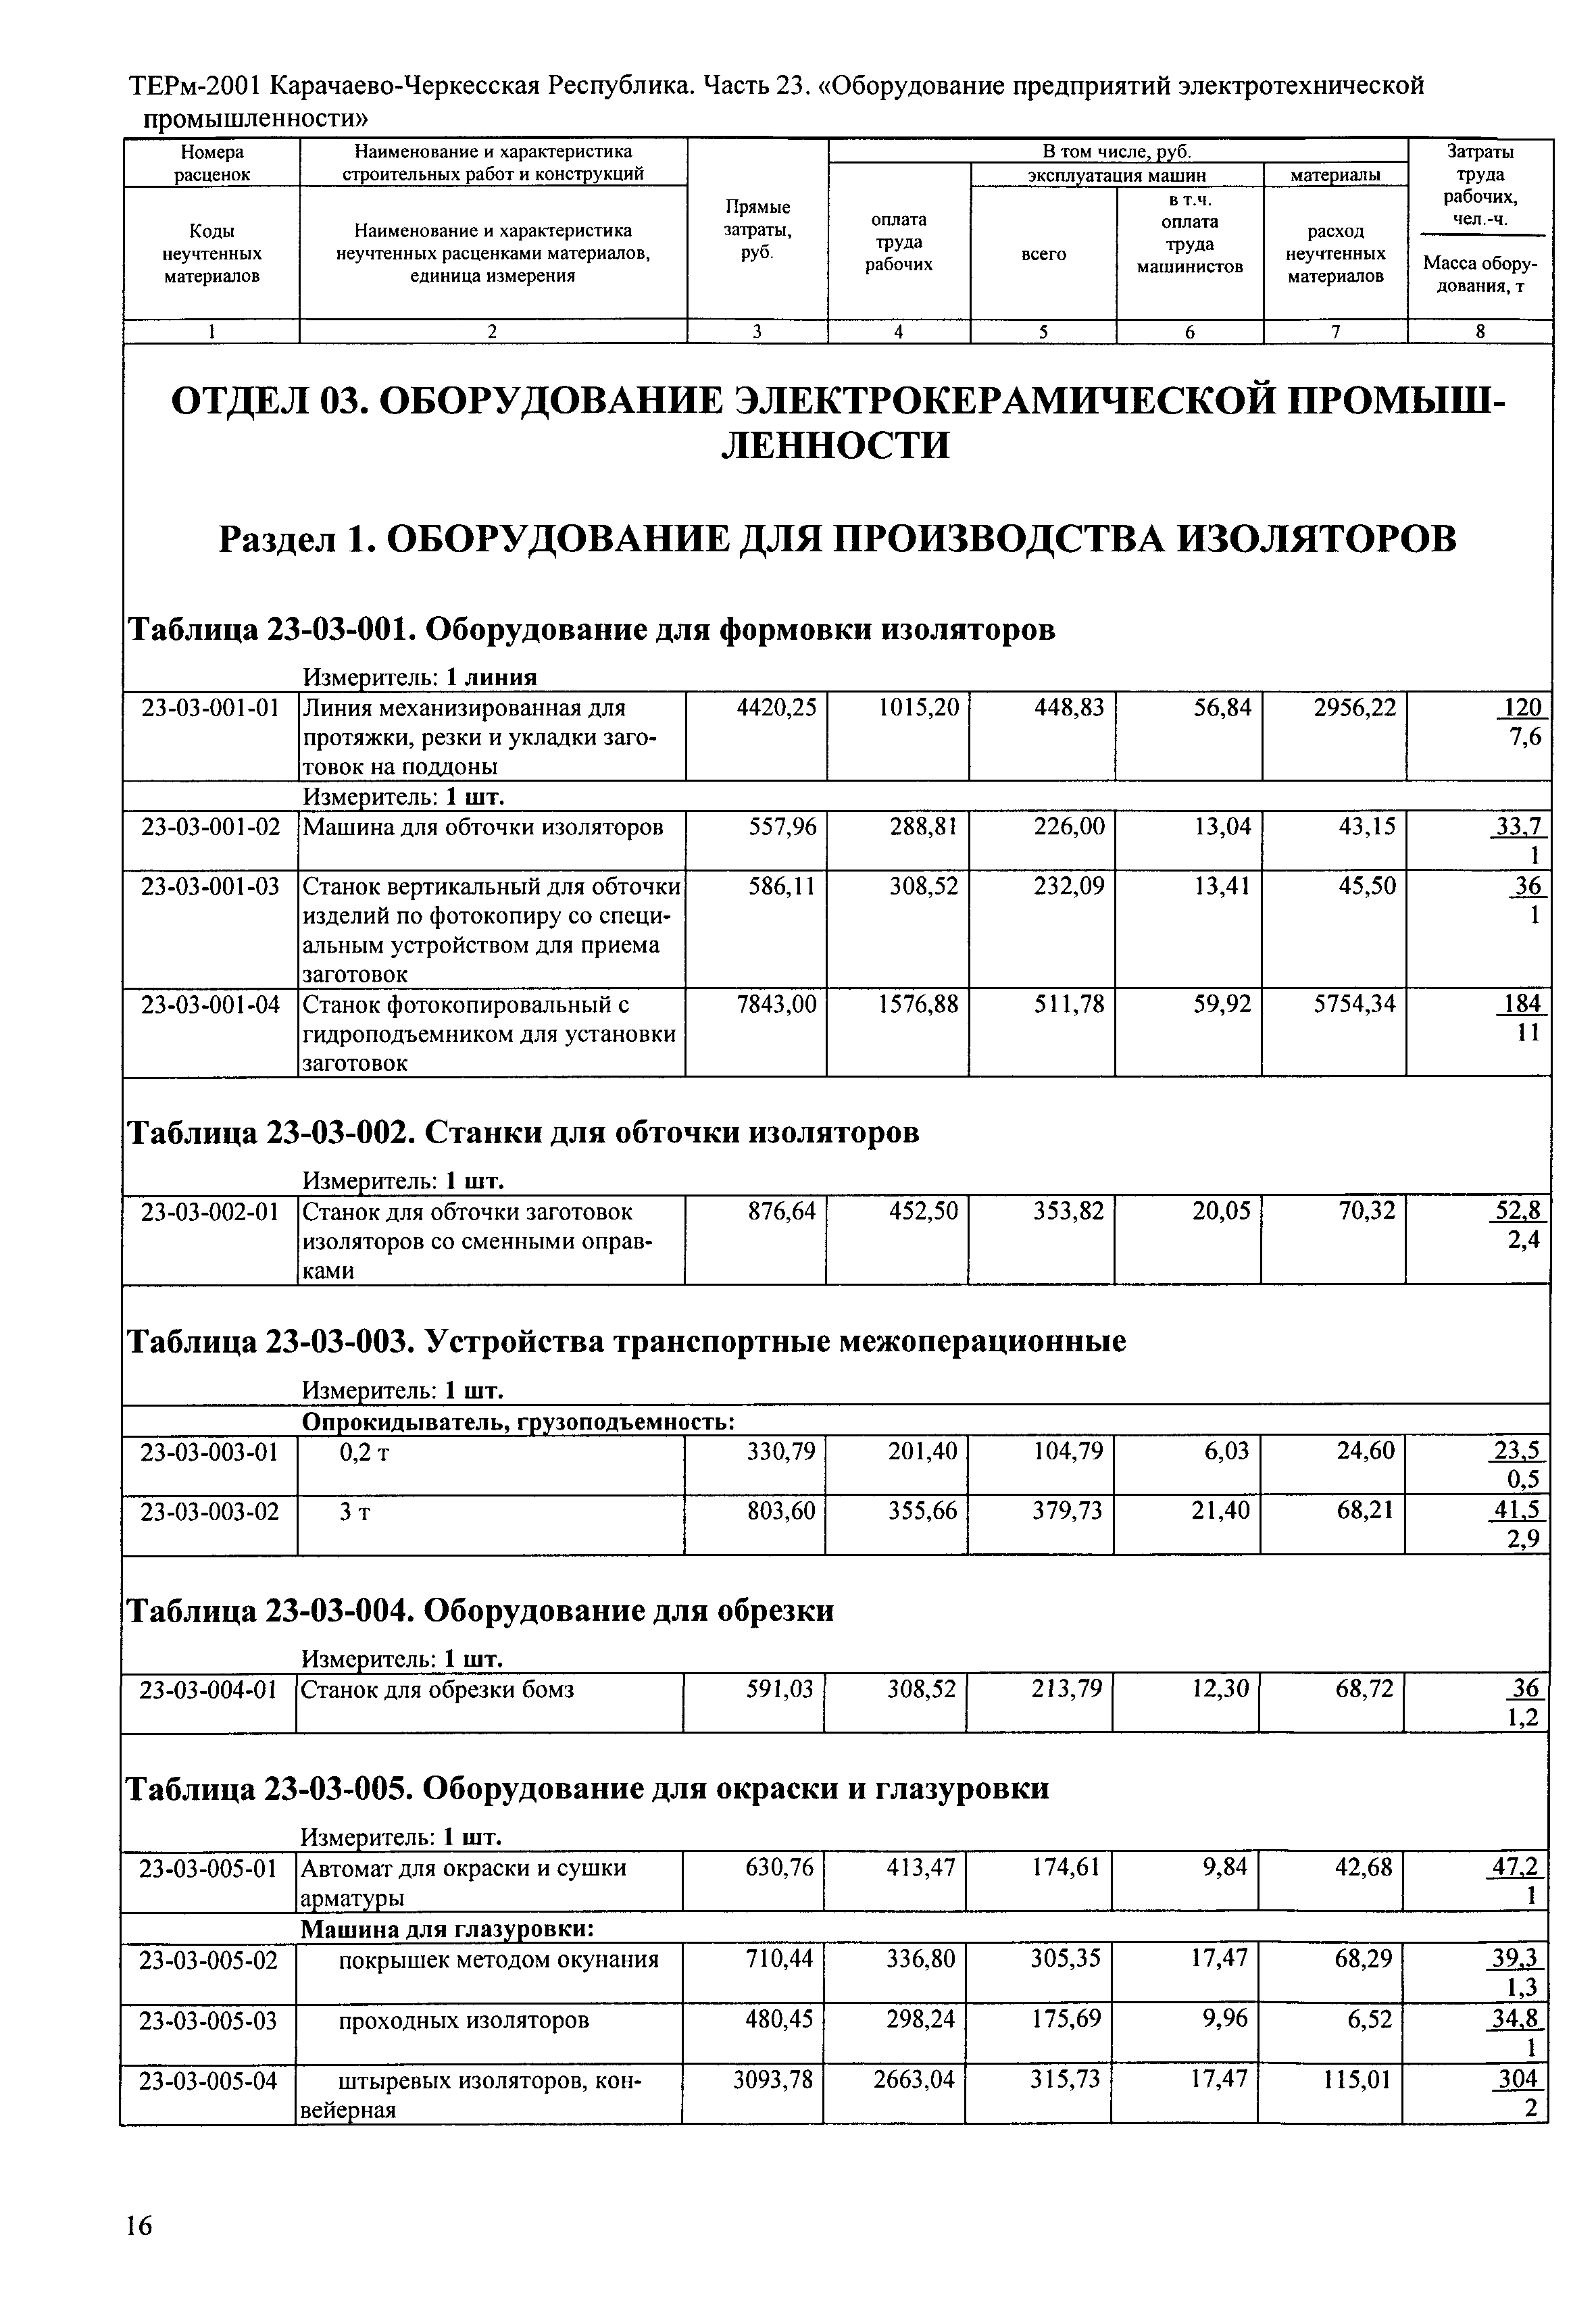 ТЕРм Карачаево-Черкесская Республика 23-2001